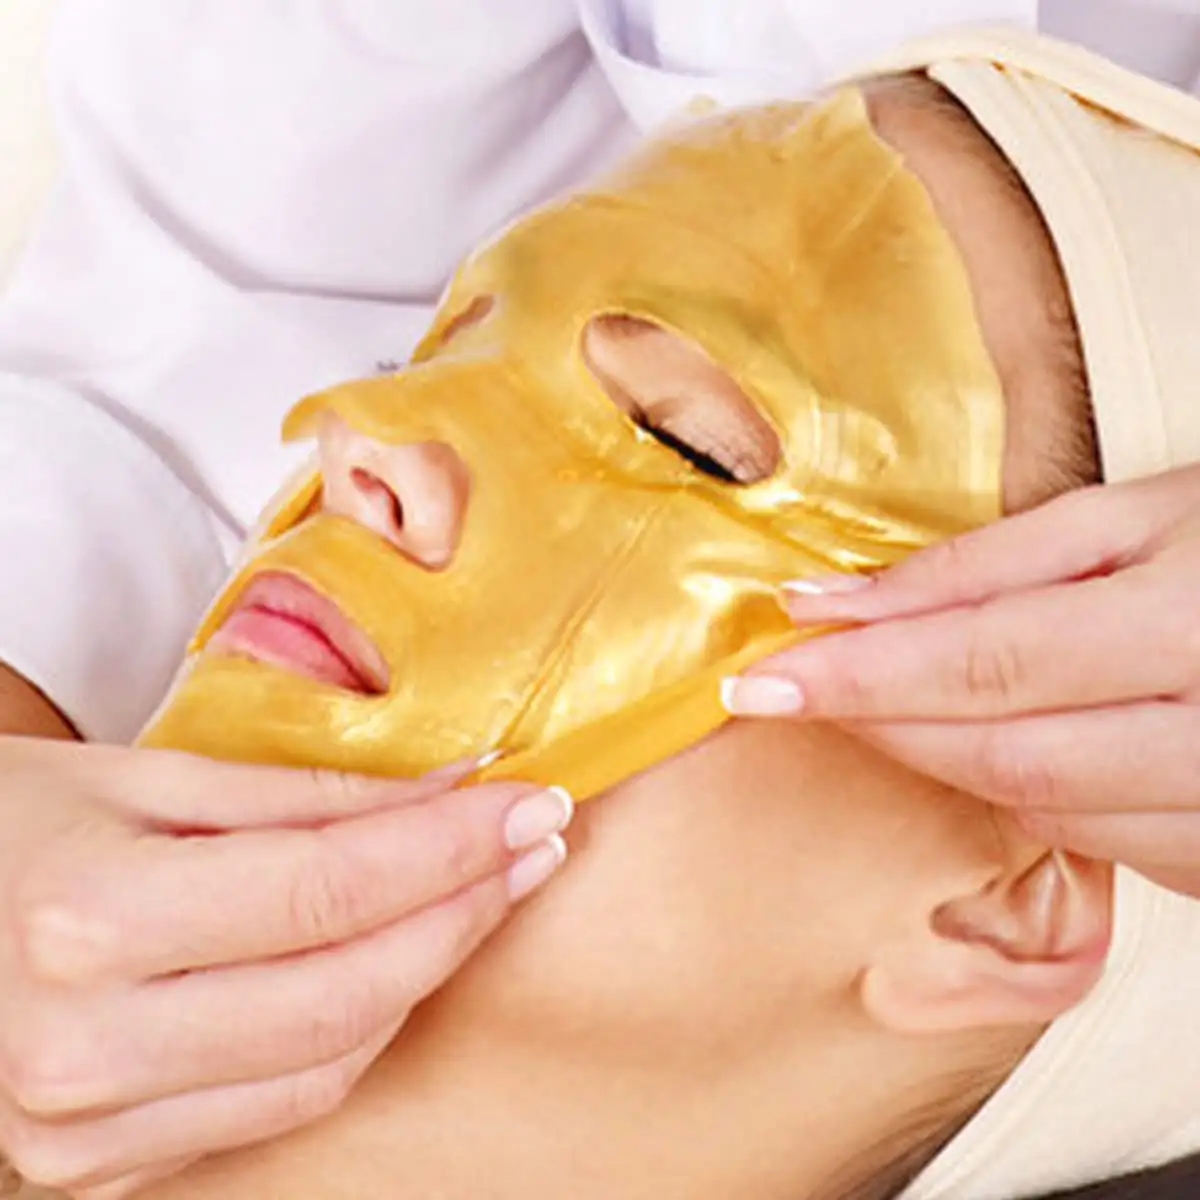 Masque Facial de soins de la peau OEM ODM, marque privée de beauté, masque Facial au collagène or 24k pour Anti-rides